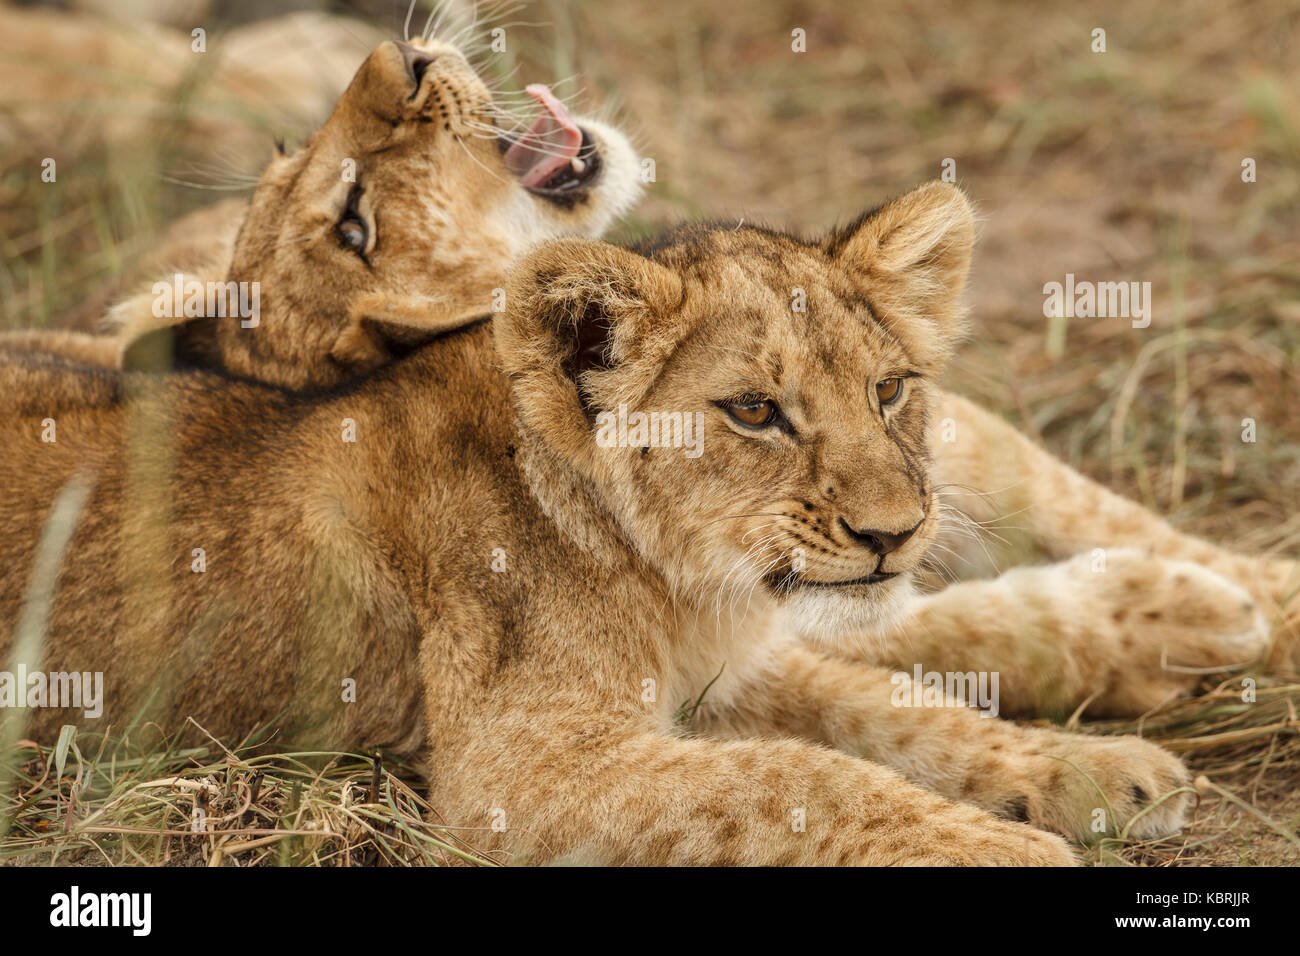 2 cachorros de león jugando peleando y mordiendo Foto de stock